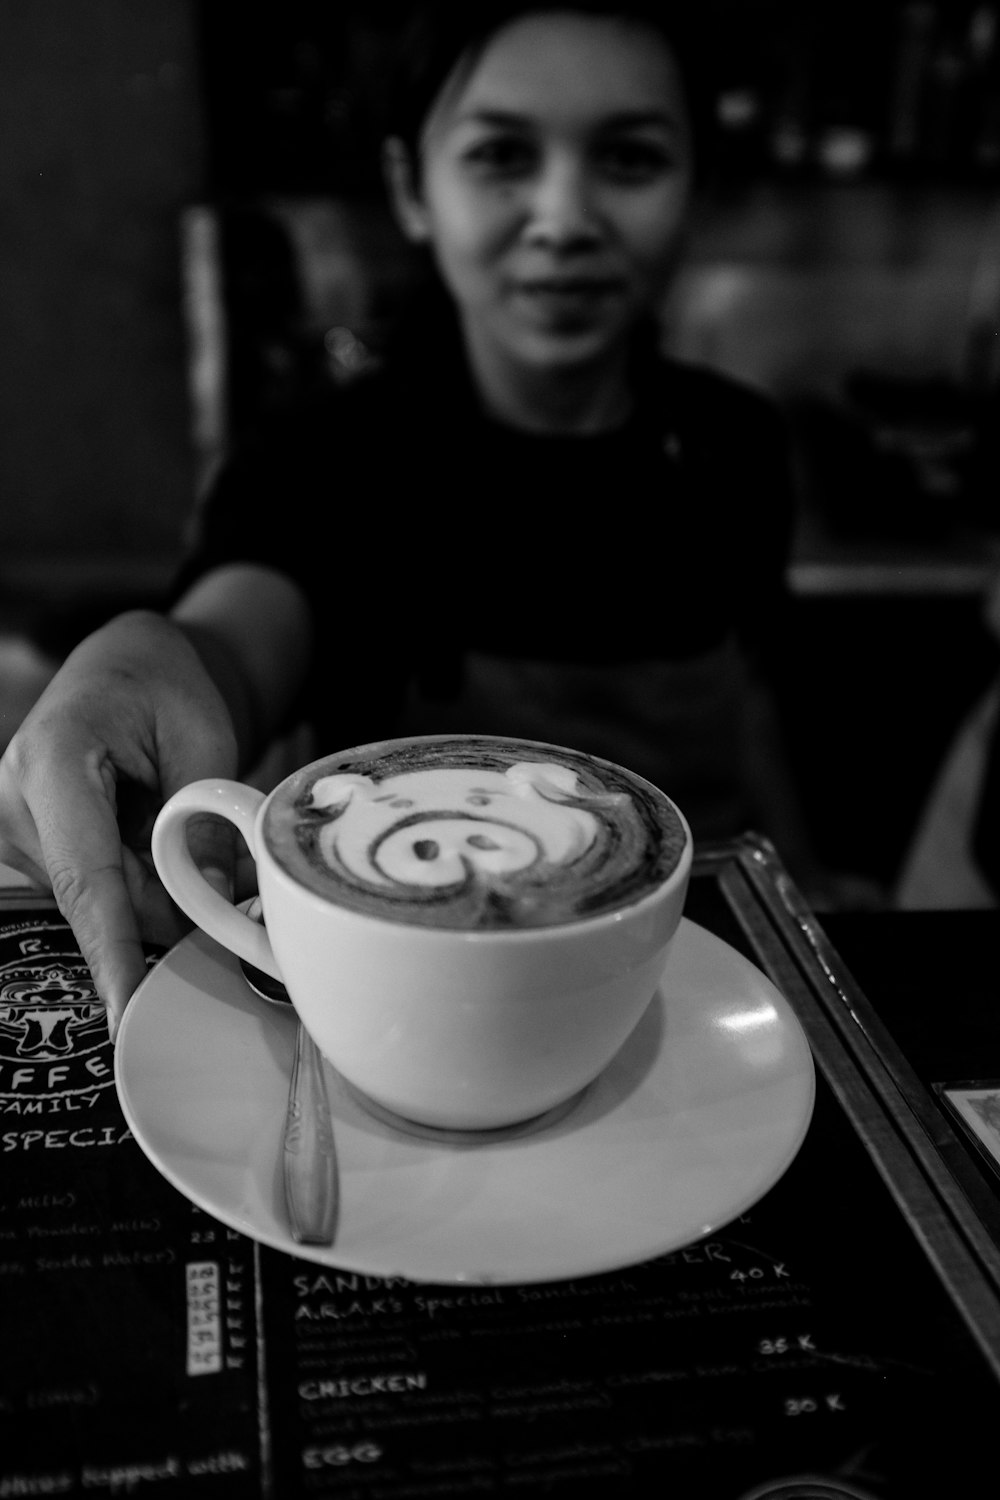 コーヒーとセラミックマグカップを持っている人のグレースケール写真